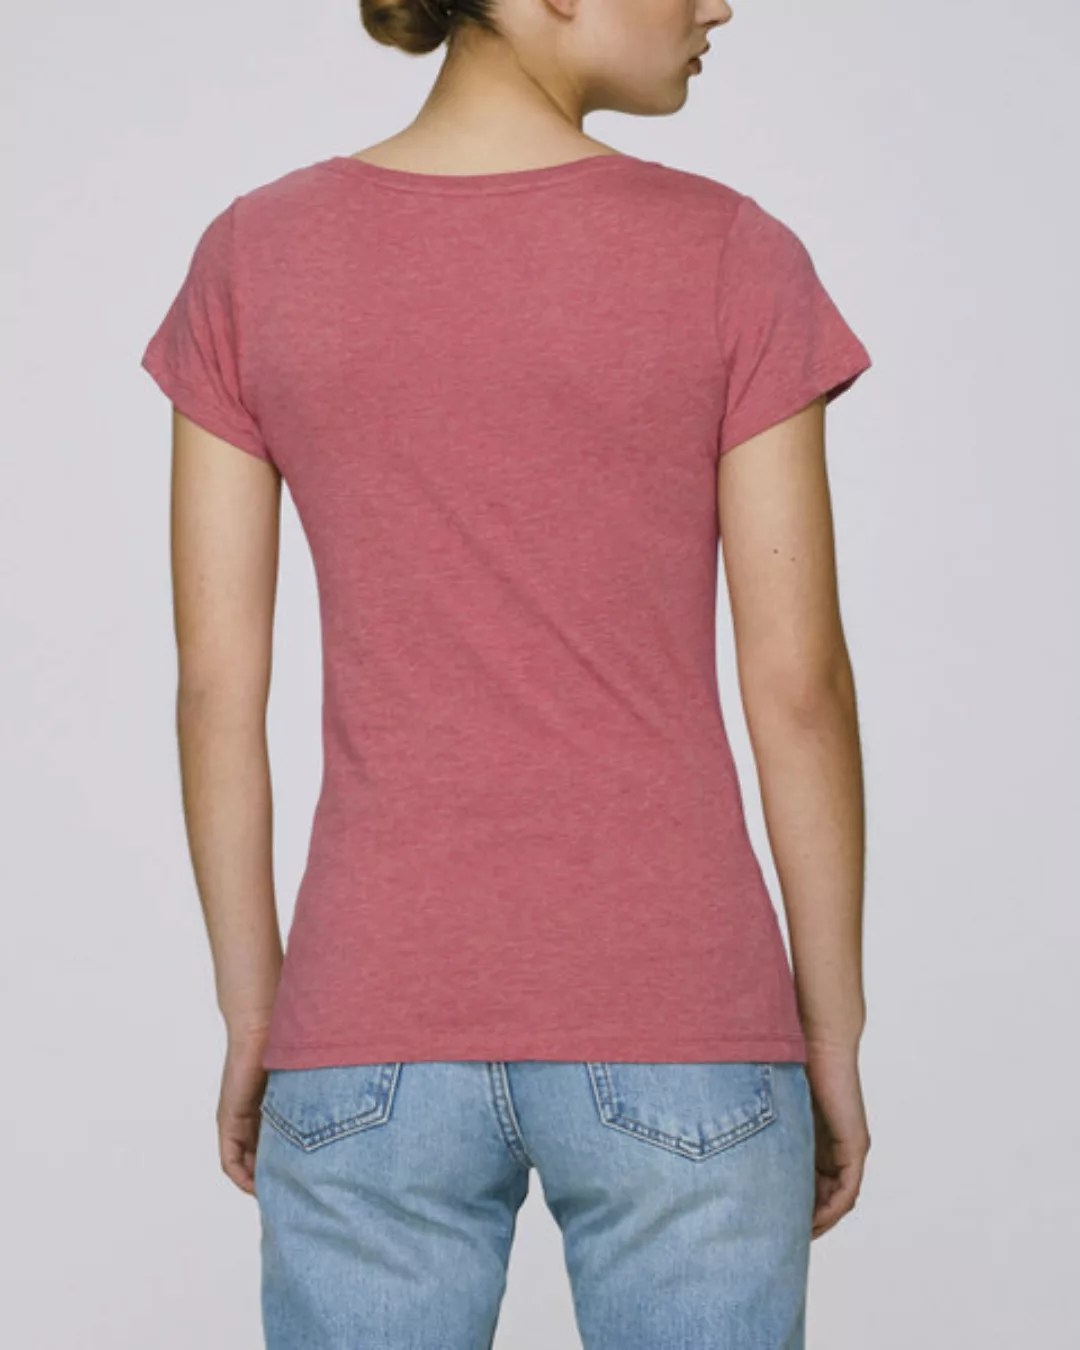 Bio Damen Sommer T-shirt "Faith - Human" In 6 Farben günstig online kaufen